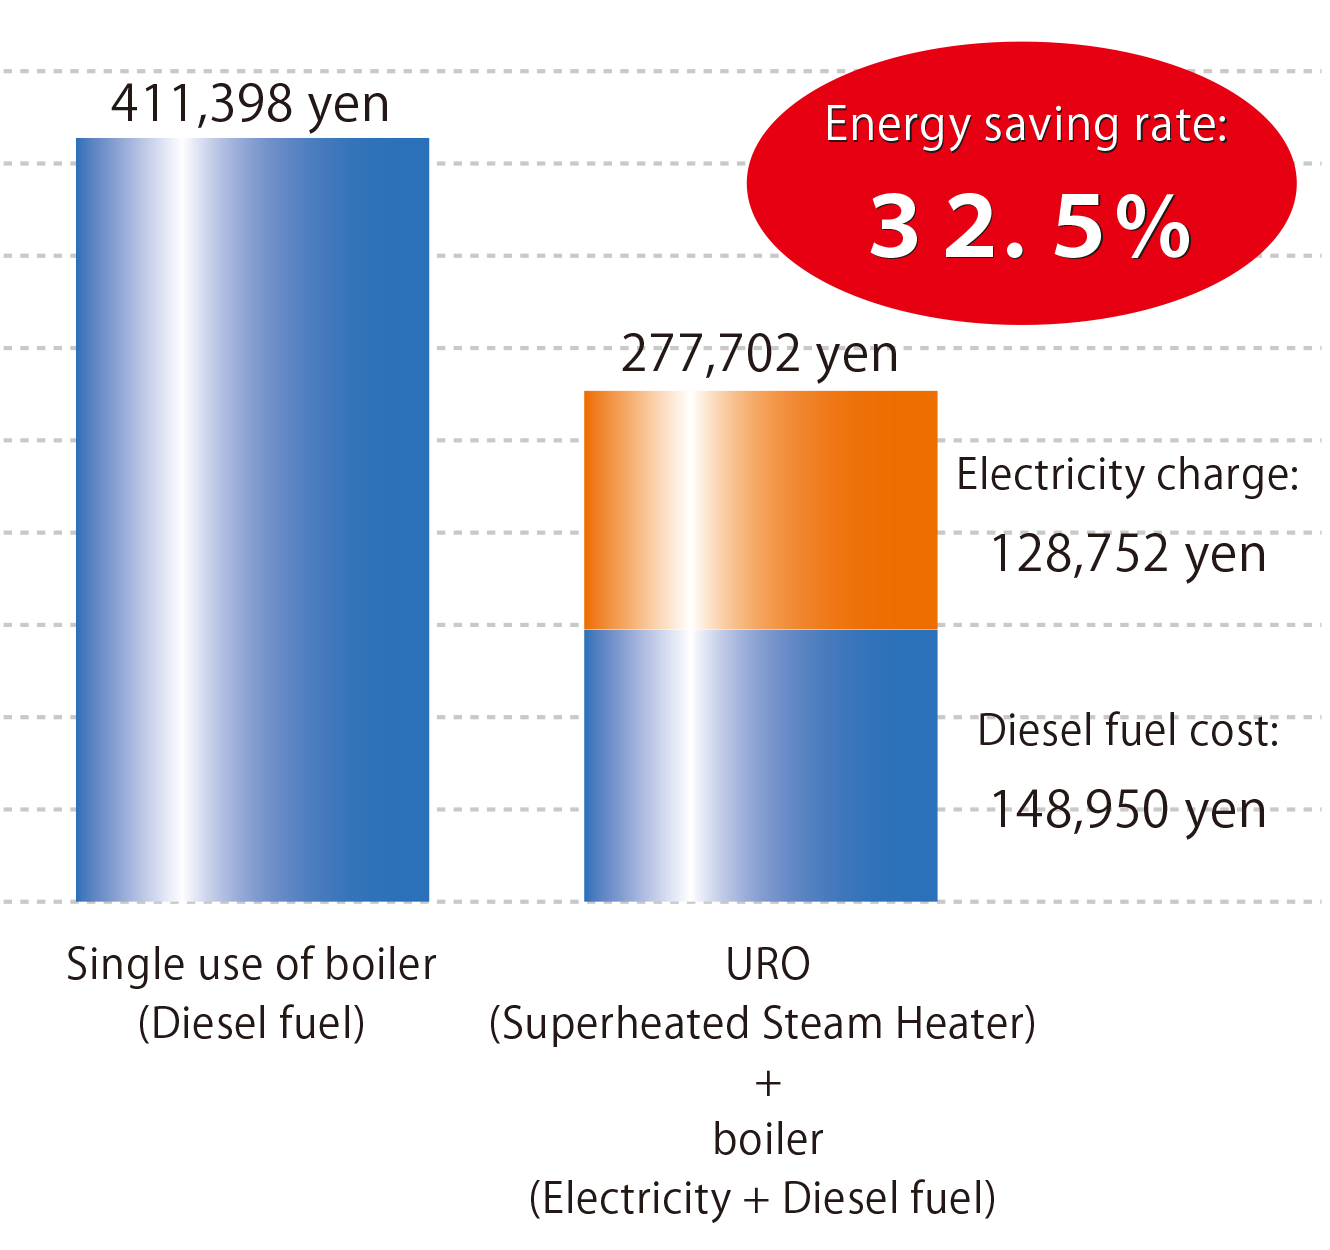 Energy saving rate: 32.5%